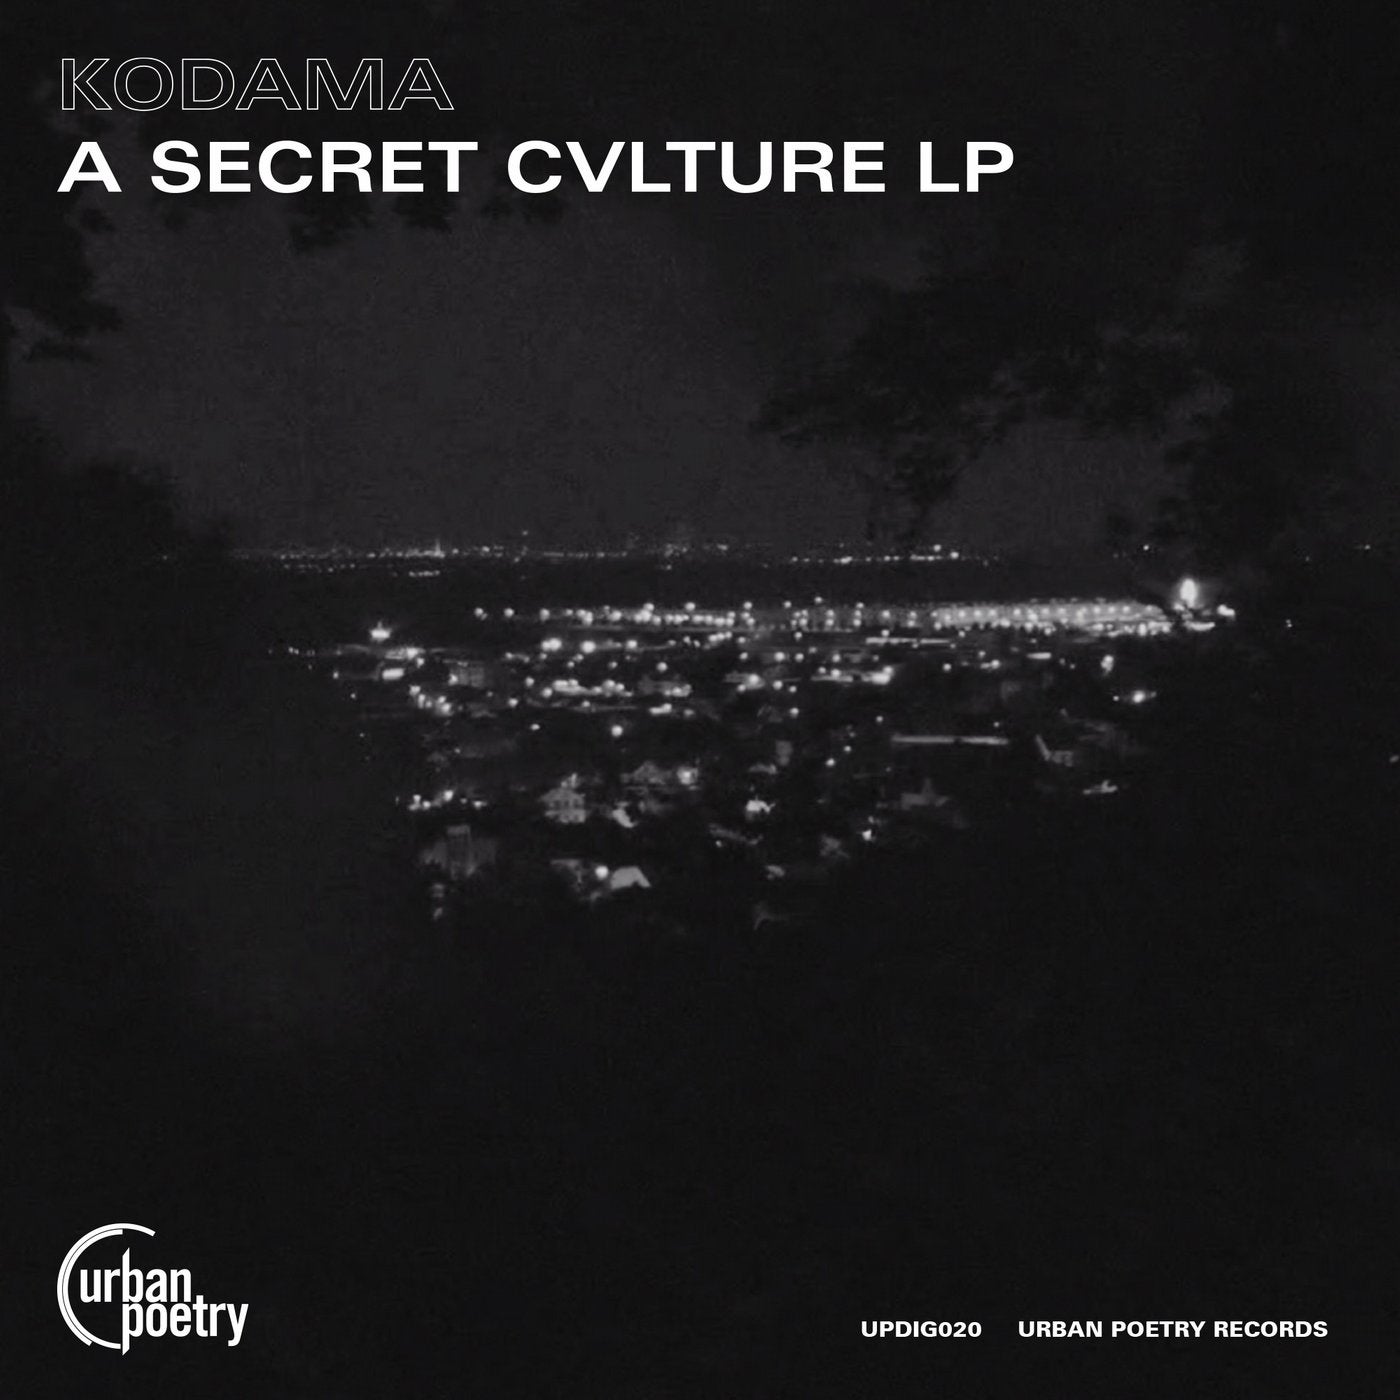 A Secret Cvlture LP